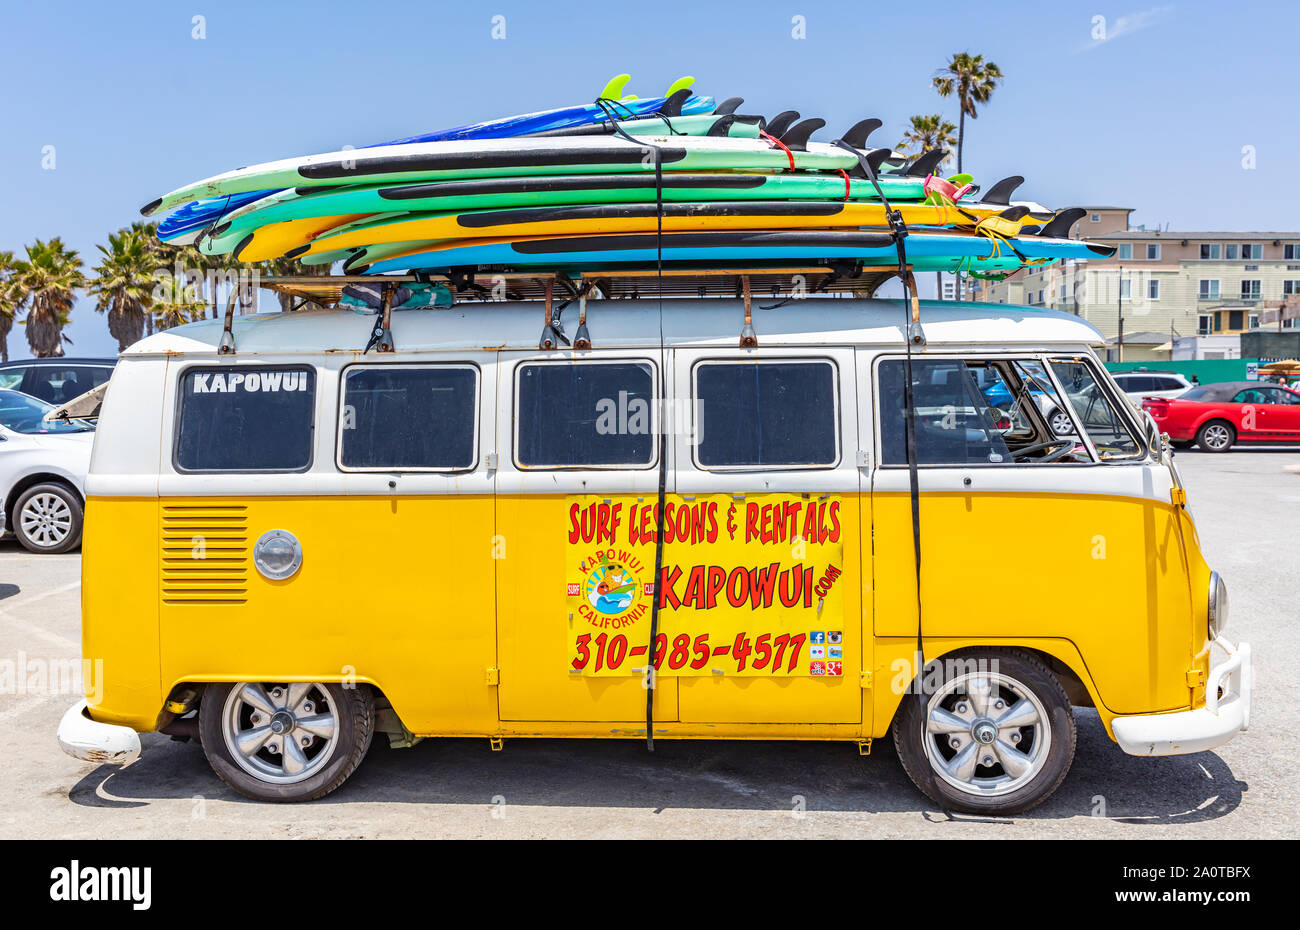 Los Angeles California USA. Maggio 30, 2019. La spiaggia di Venezia, tavole da surf impilati su un giallo padiglione del furgone, scuola di surf adv, soleggiata giornata di primavera Foto Stock